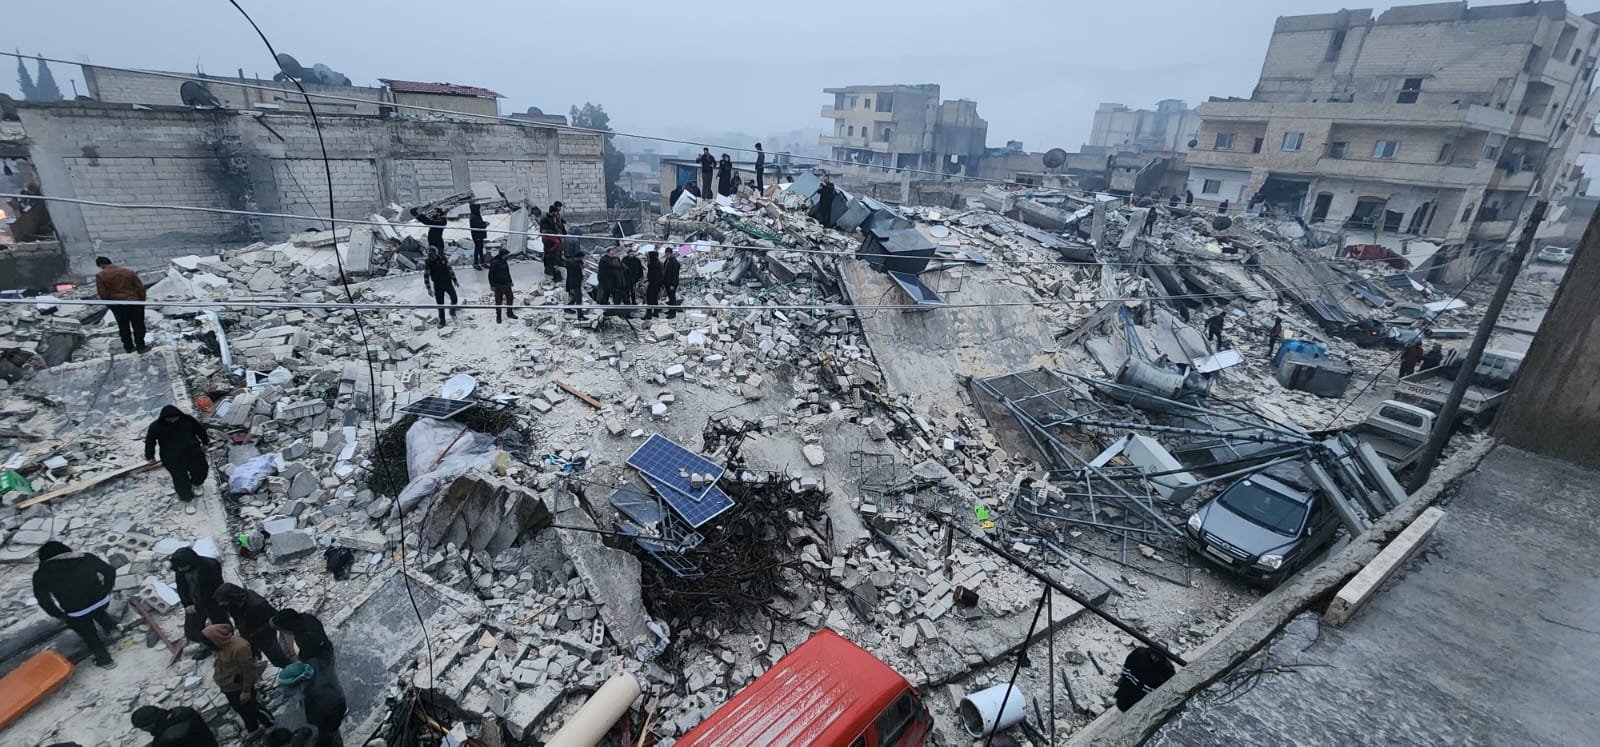 أردوغان يتوجه إلى مقر إدارة الكوارث .. وعدد قتلى الزلزال يقترب إلى 300-8